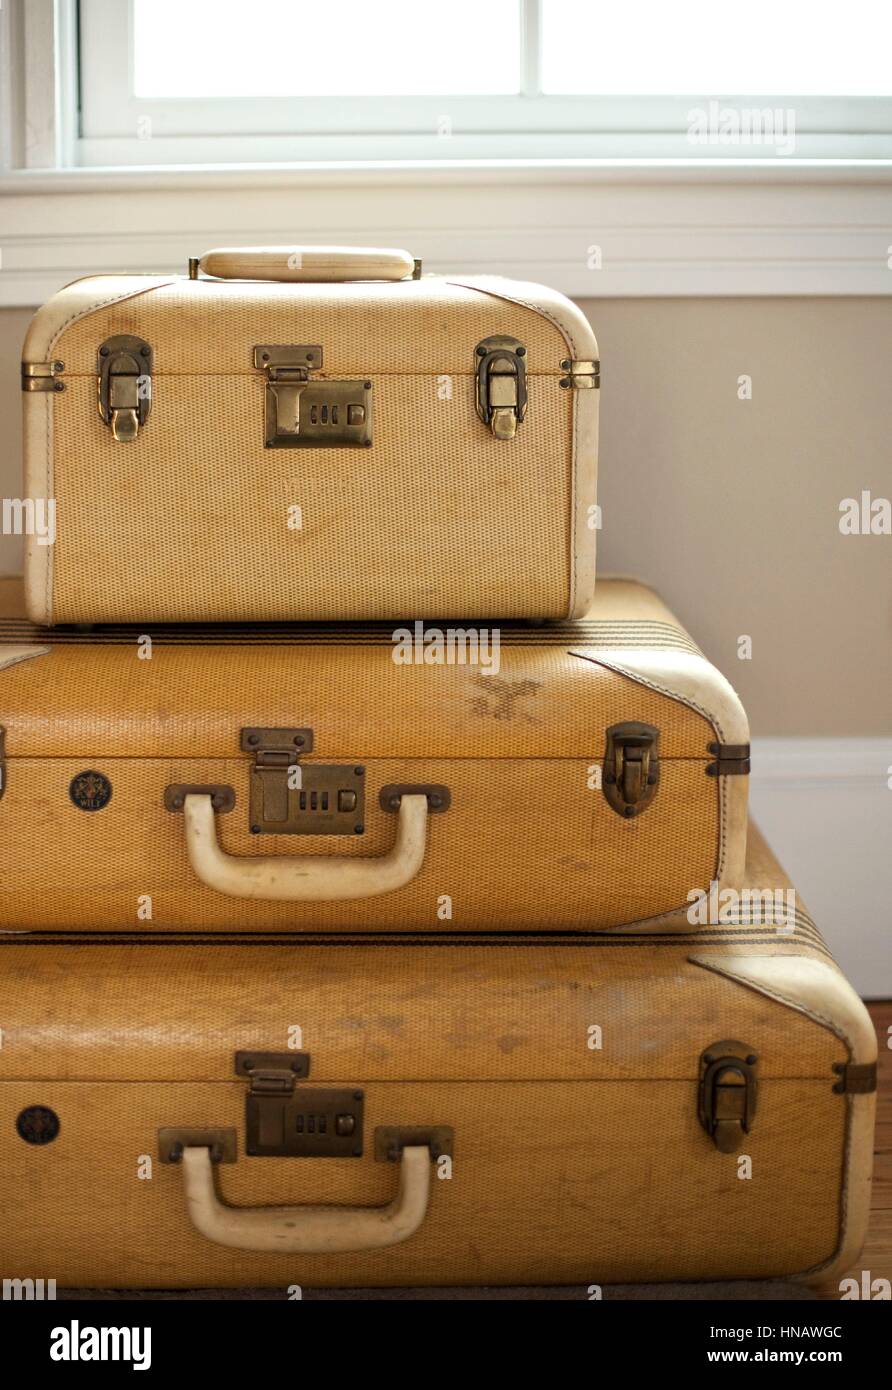 Old Shabby Vintage Suitcase Isolated on White Background. Retro